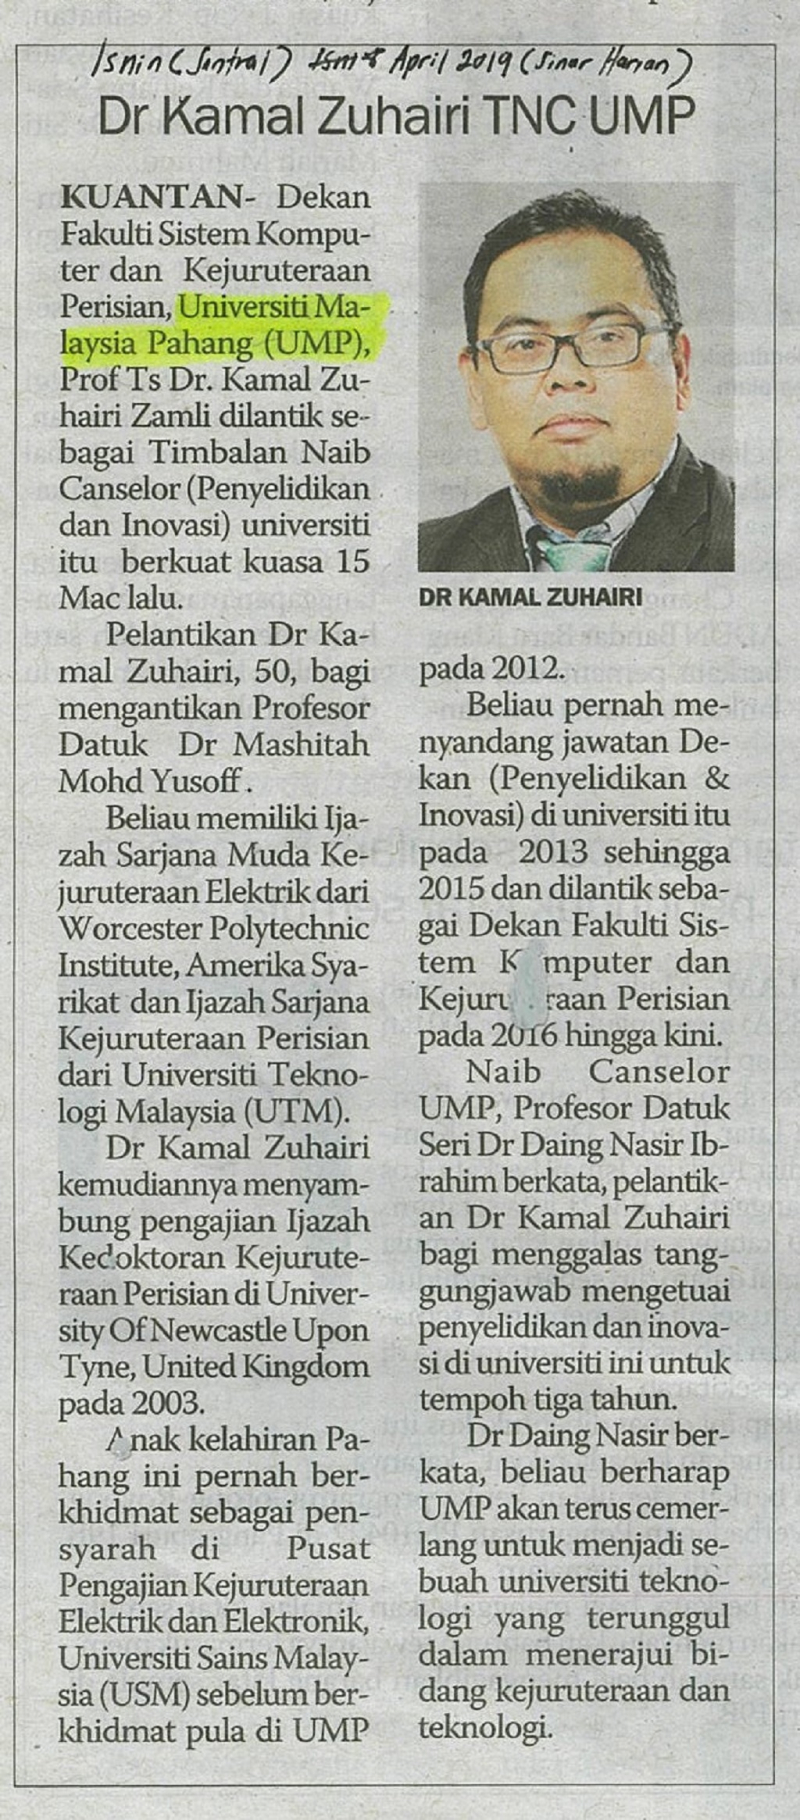 Dr. Kamal Zuhairi TNC, UMP